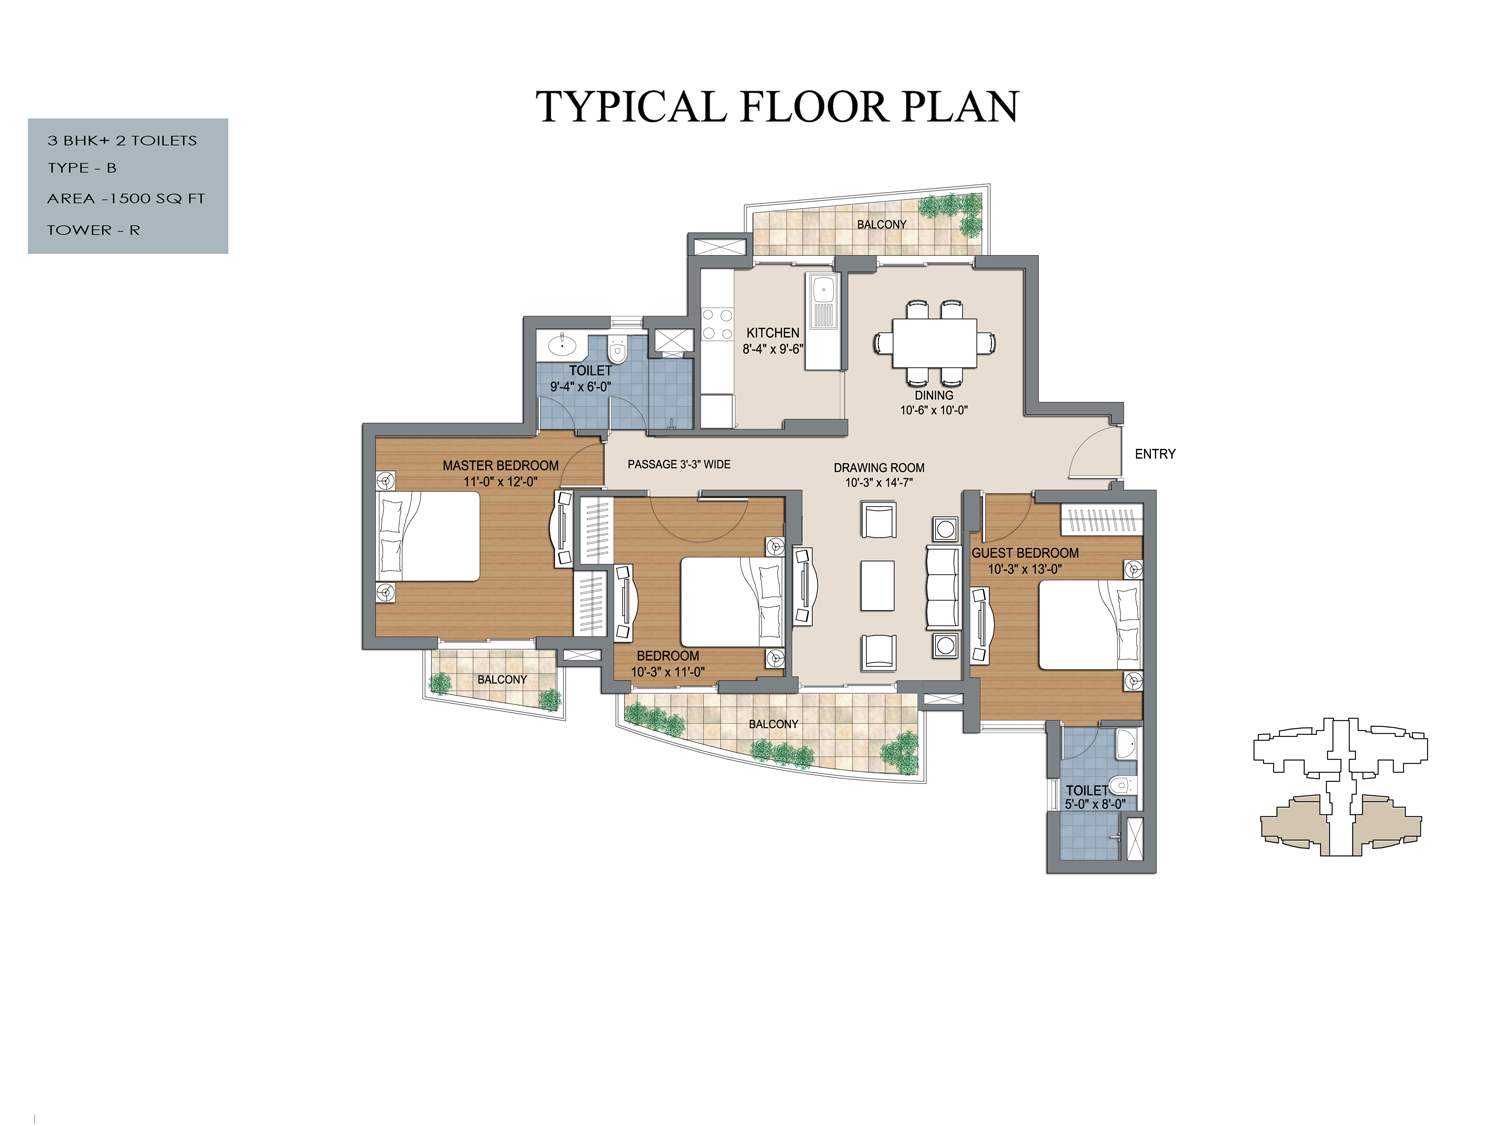 floor plan of bptp the resort